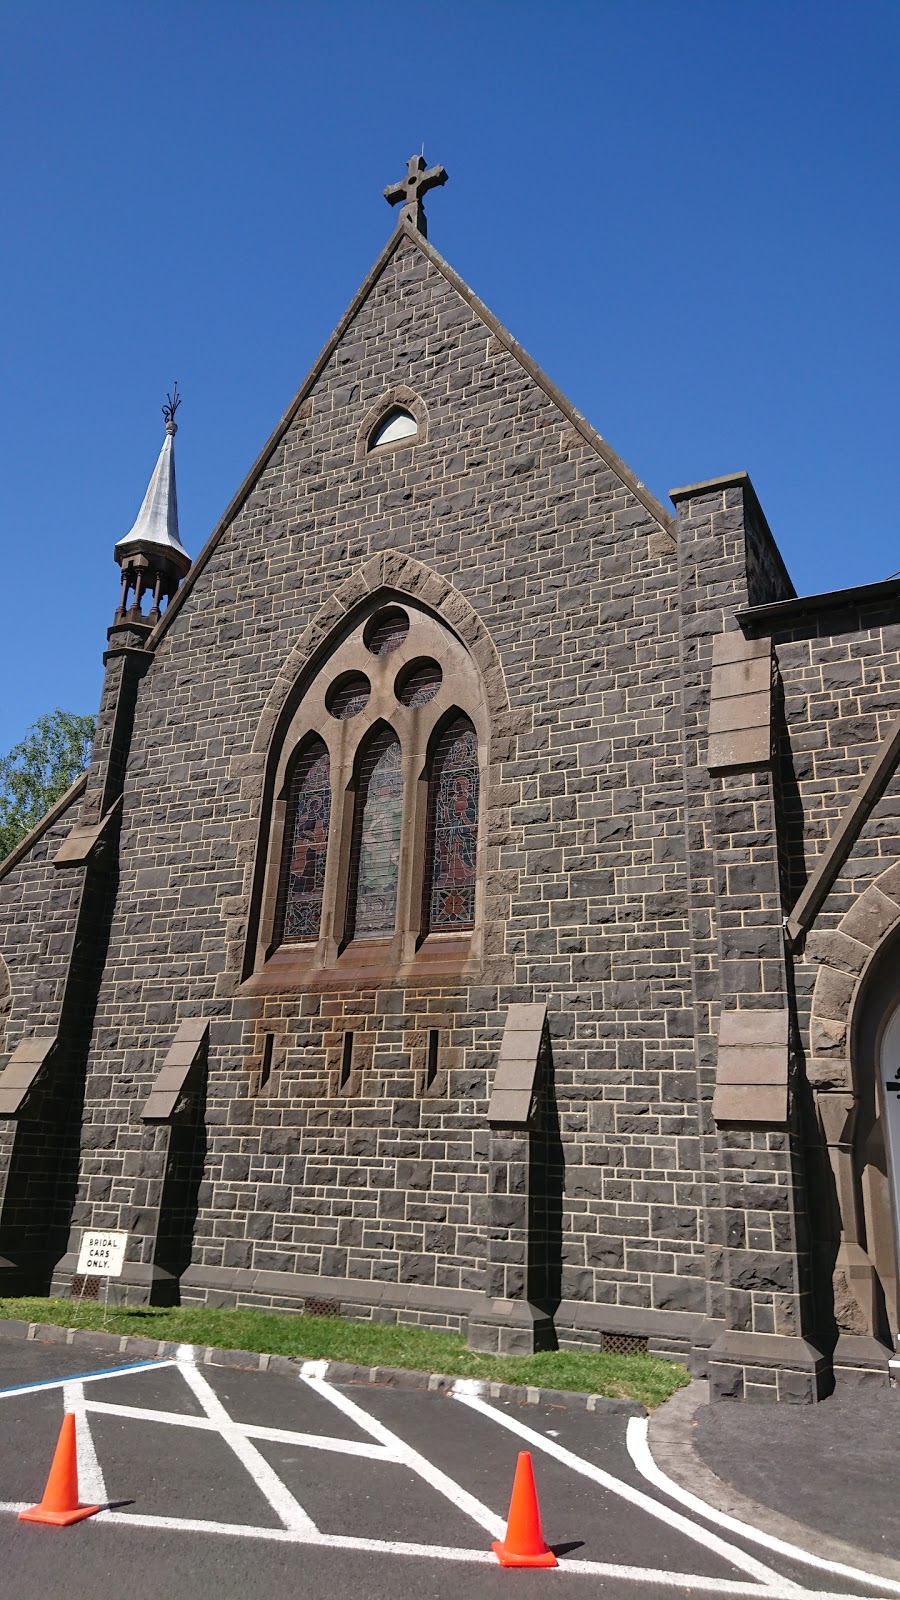 Oaktree Anglican Church | church | 281 Glen Eira Rd, Caulfield North VIC 3161, Australia | 0425768786 OR +61 425 768 786